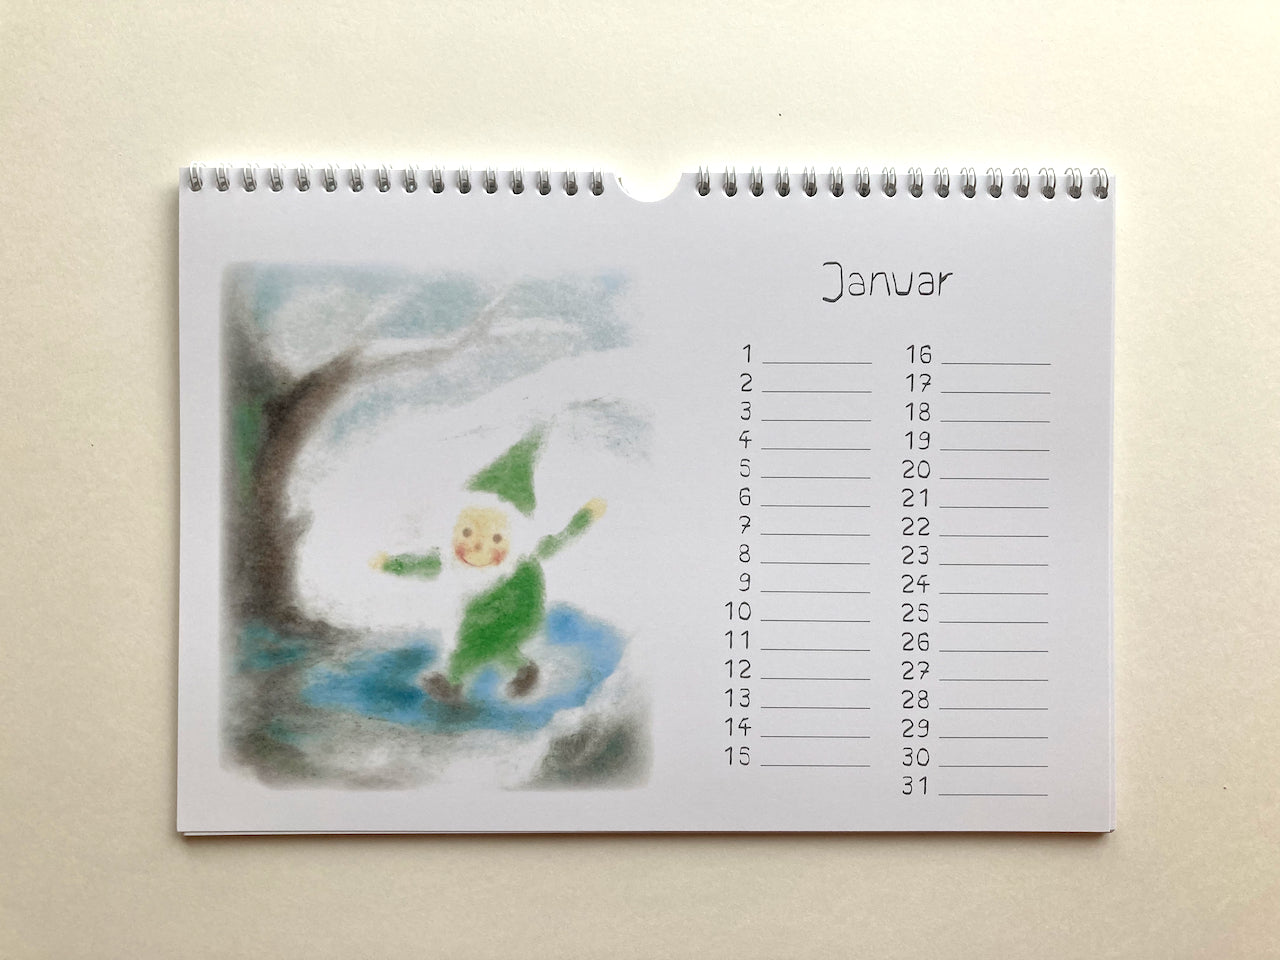 Immerwährender Zwergenkalender, Januar in Seccorell-Technik von Andrea Reiß